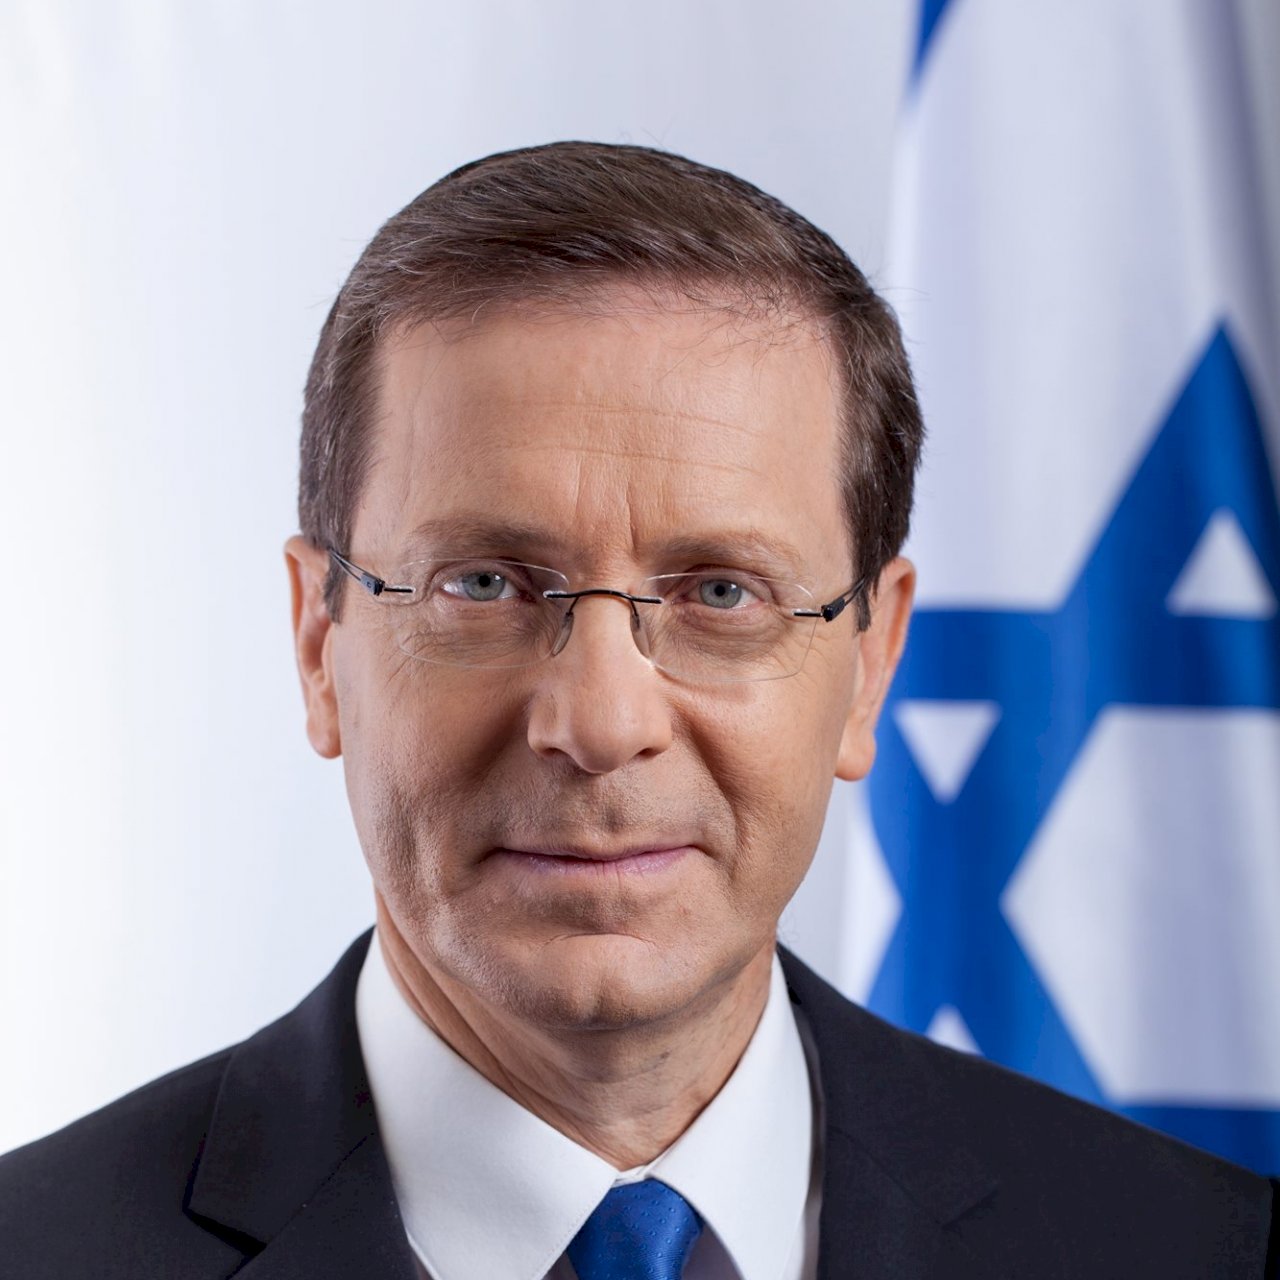 以色列總統與約旦國王秘密會面 兩國關係持續改善